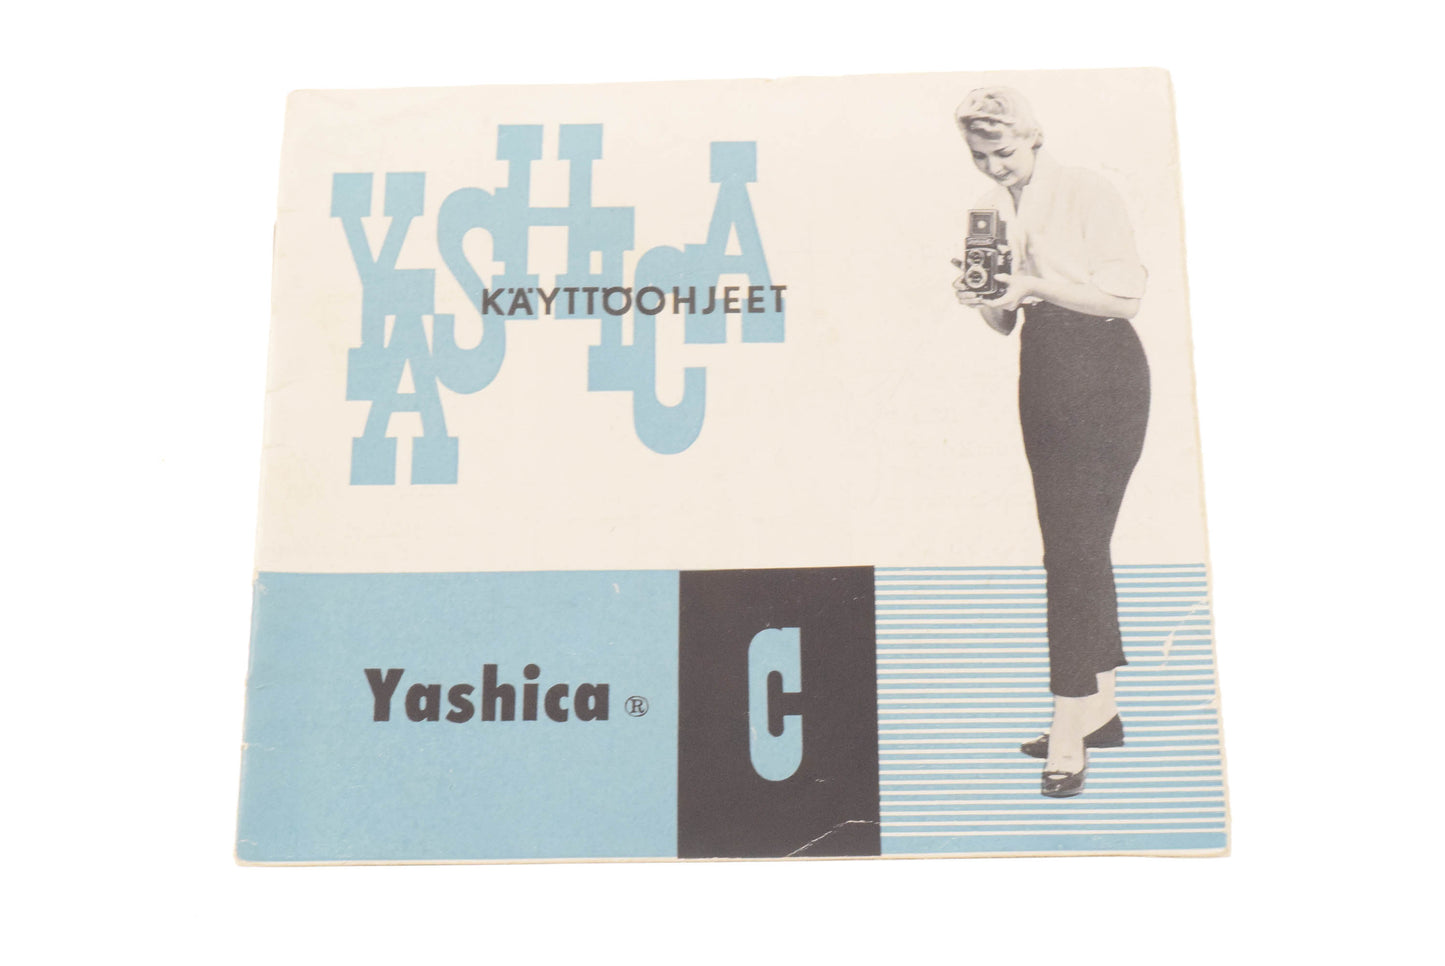 Yashica C Instruction Manual